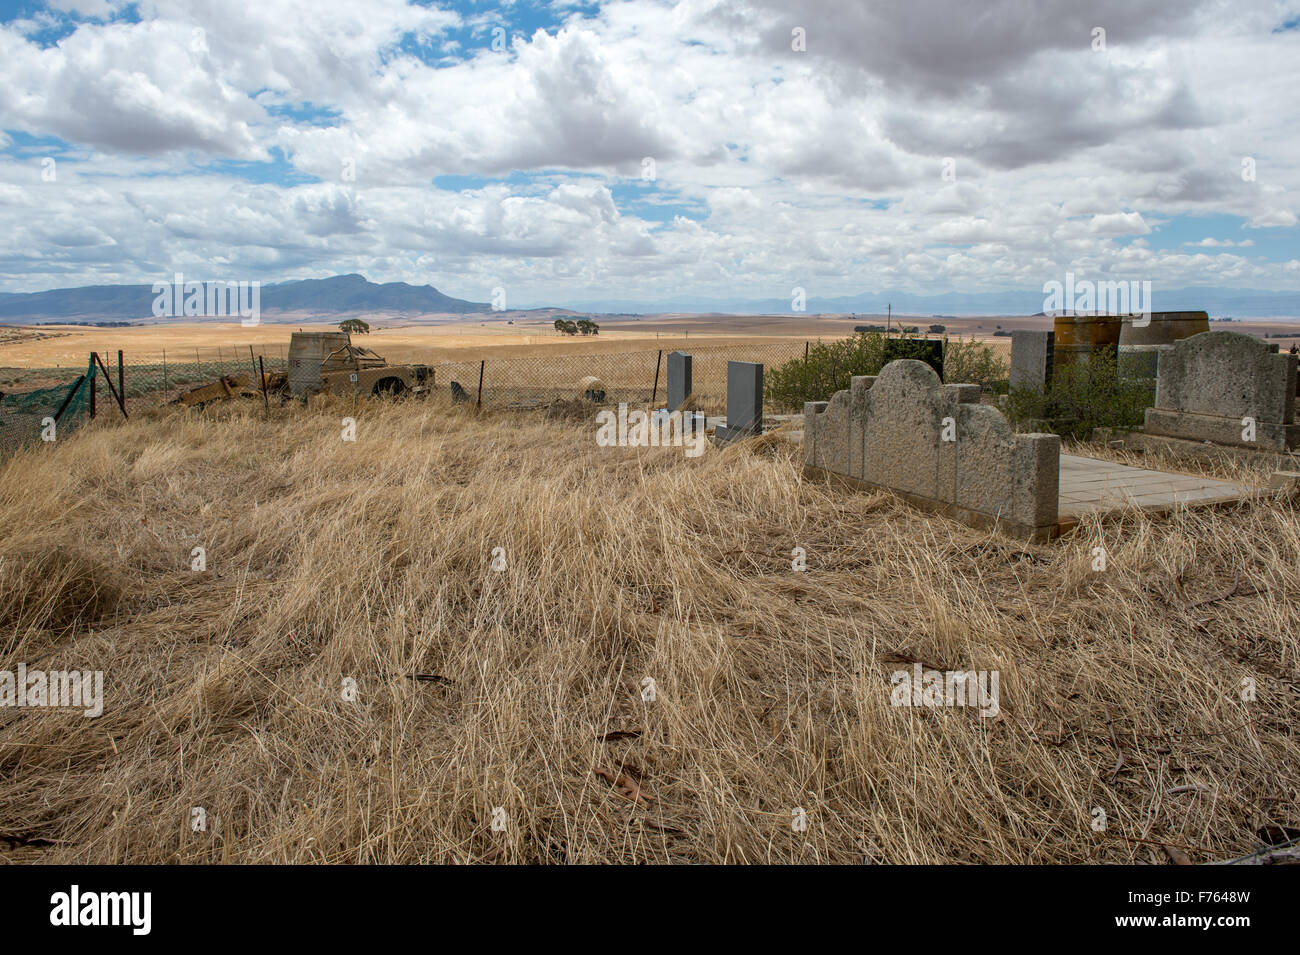 Grabsteine in einem Feld in Südafrika Stockfoto